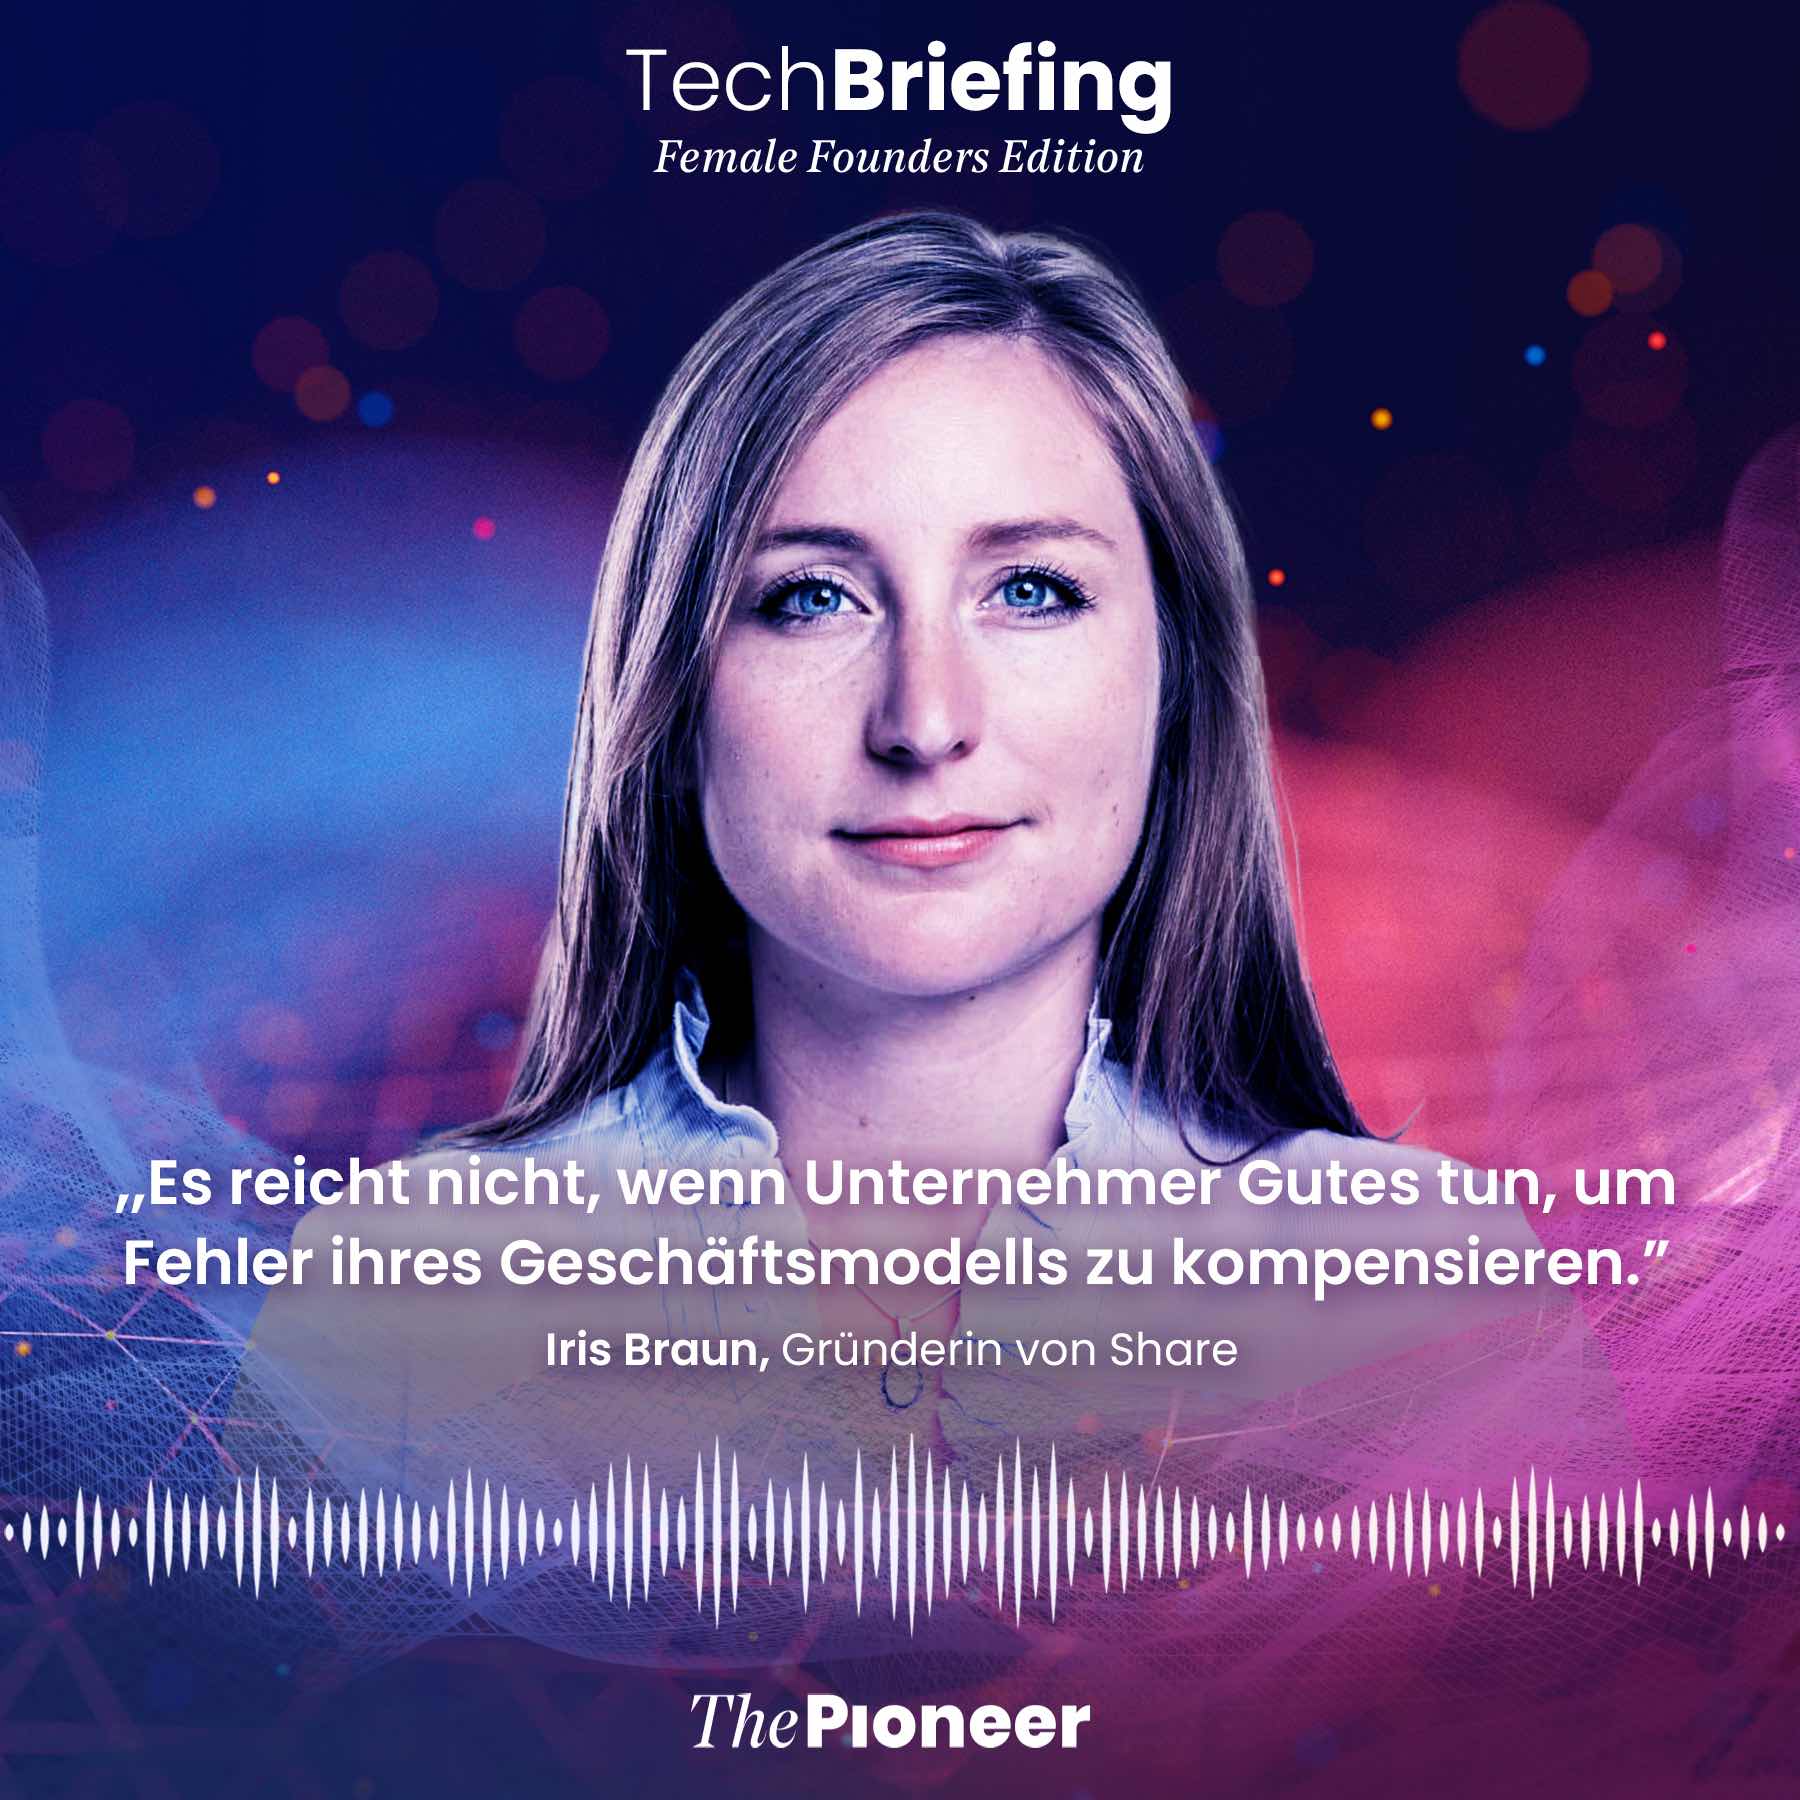 20201120-image-media pioneer-morning briefing-Kachel Braun